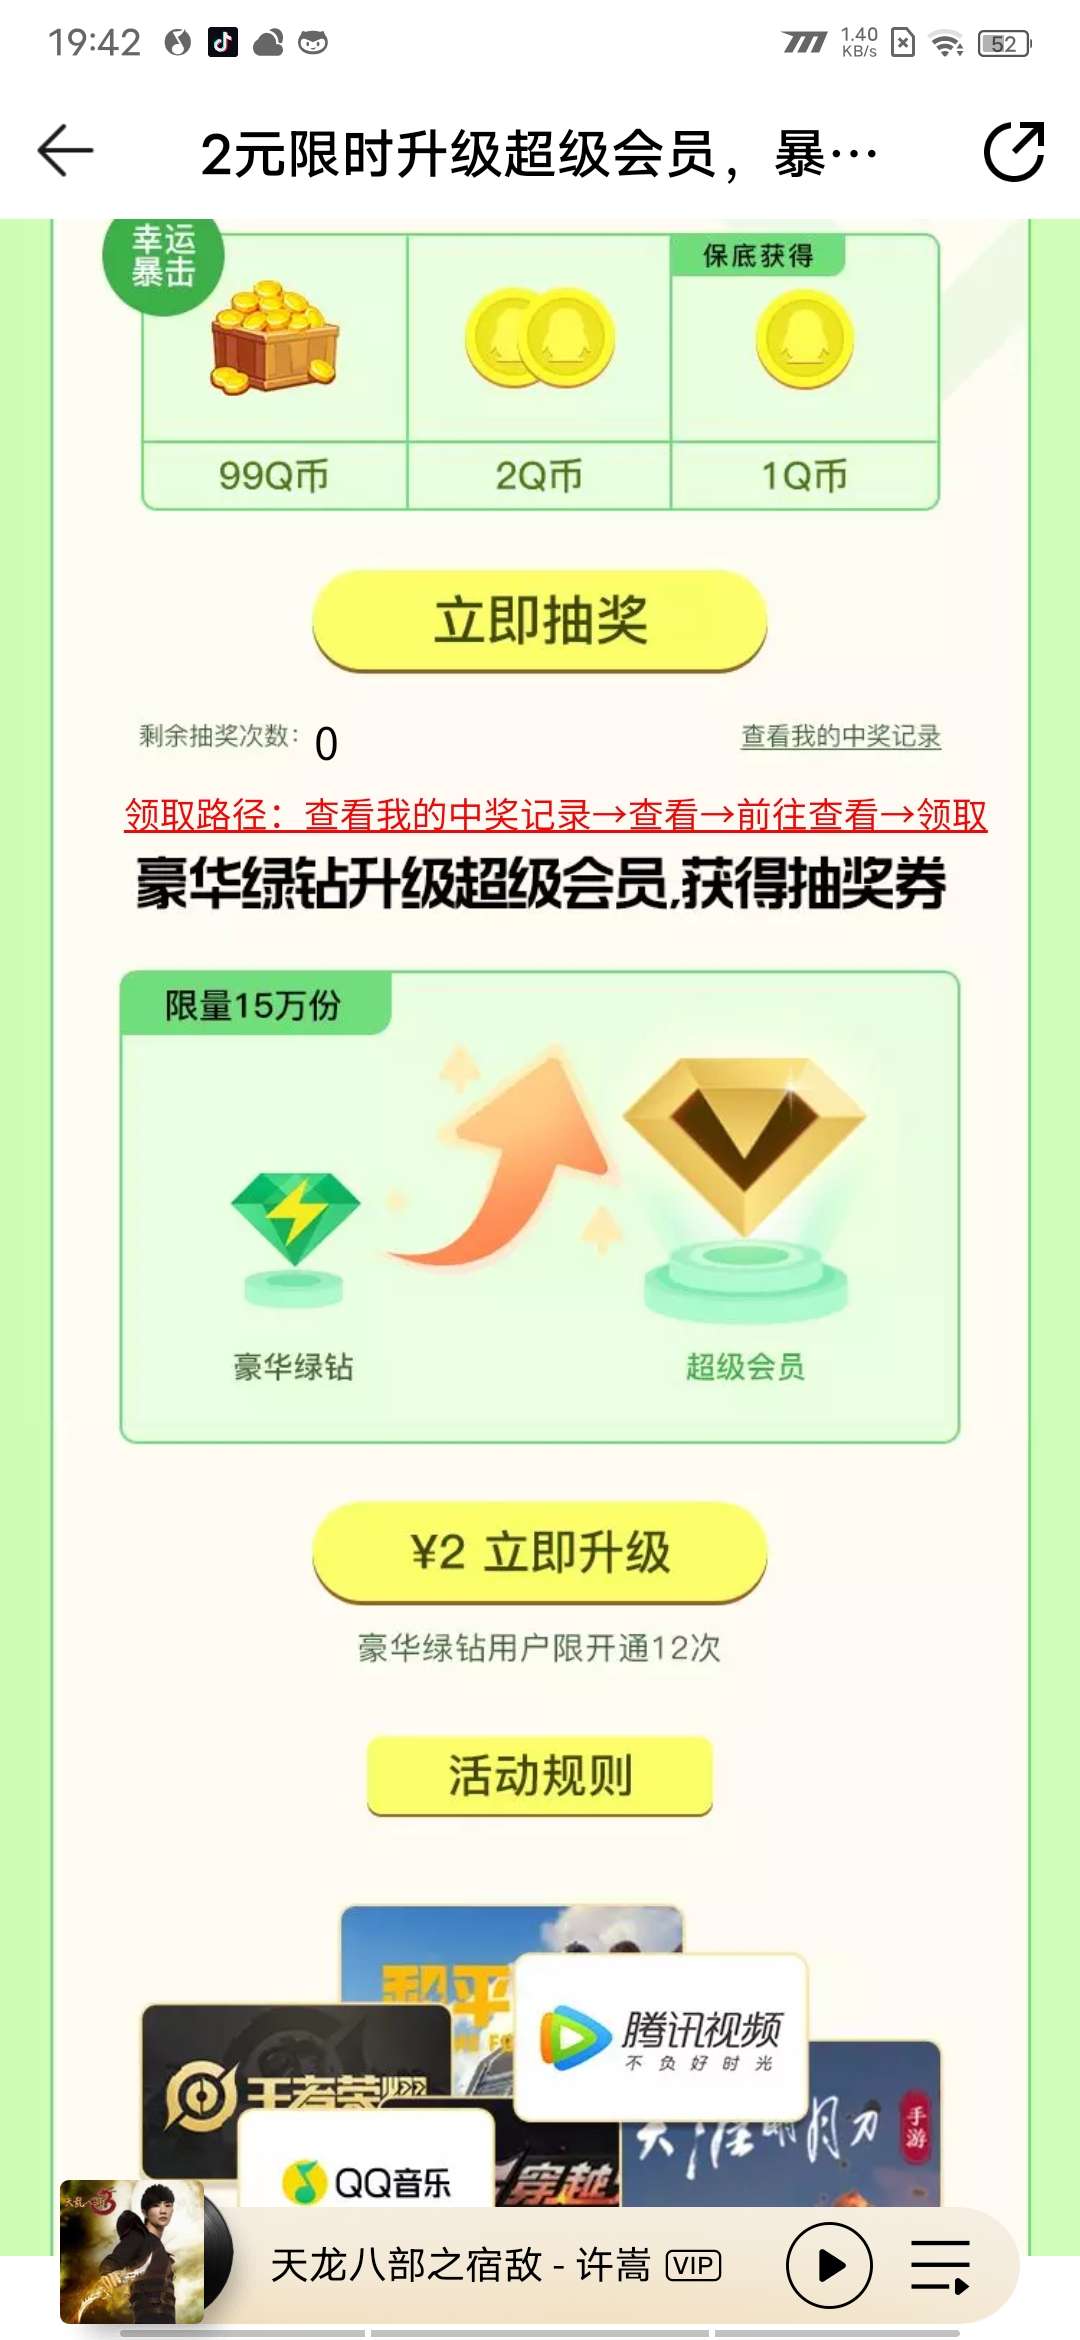 QQ音乐绿钻2元升级超级会员_福利线报